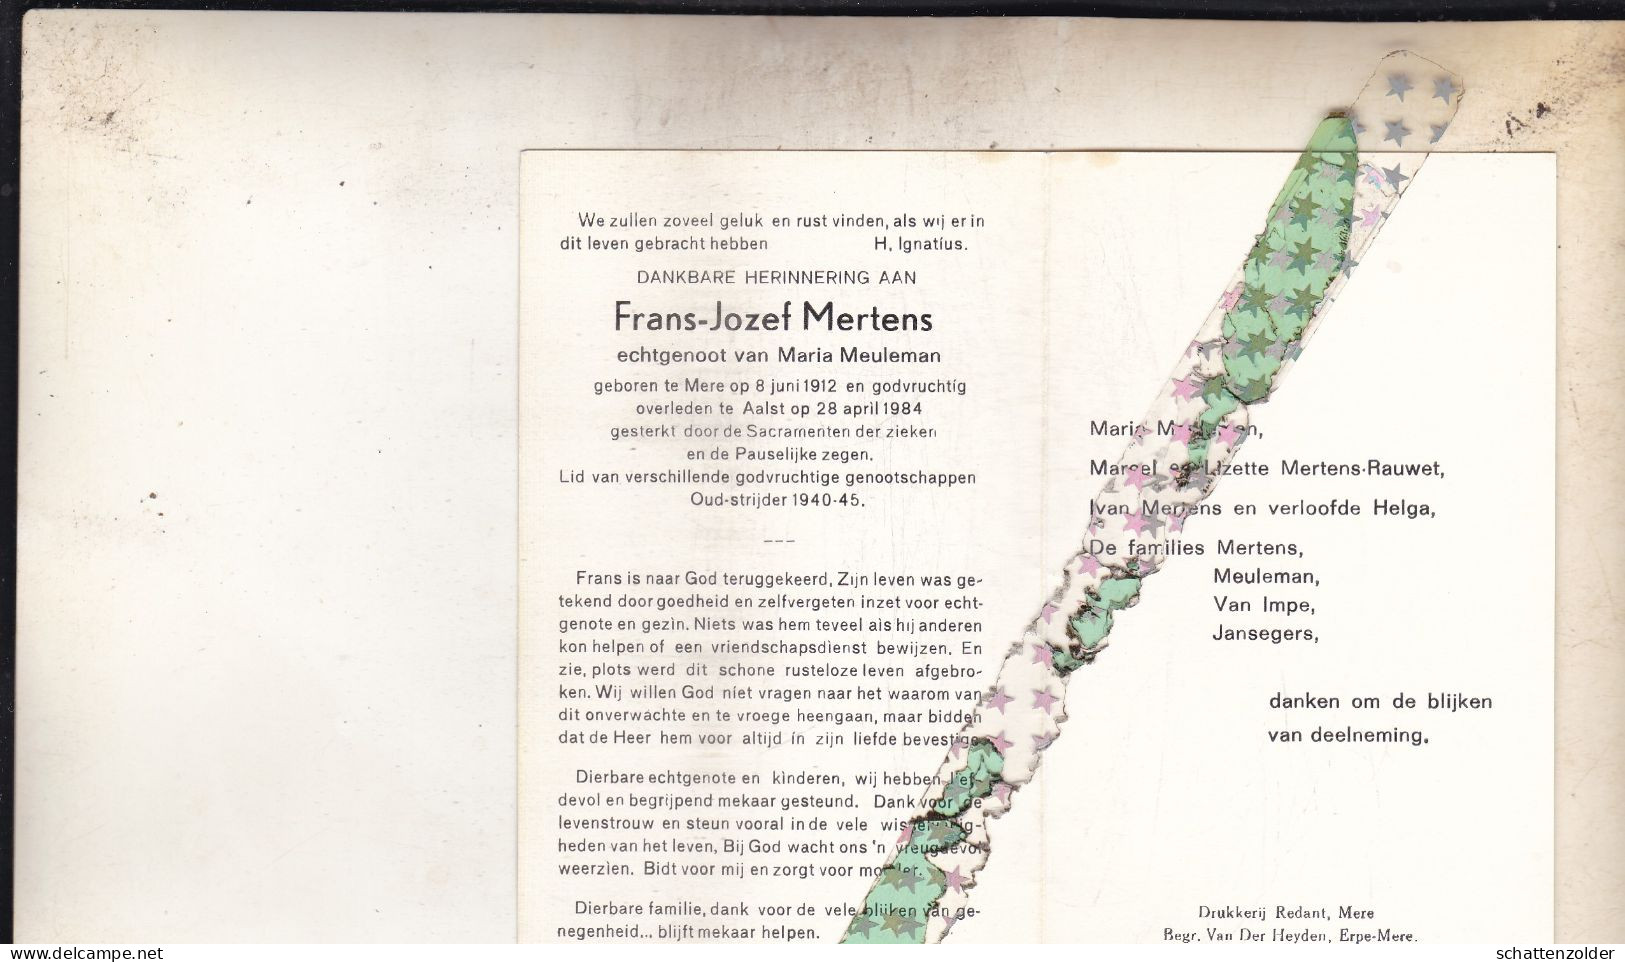 Frans Jozef Mertens-Meuleman, Mere 1912, Aalst 1984. Oud-strijder 40-45 - Todesanzeige